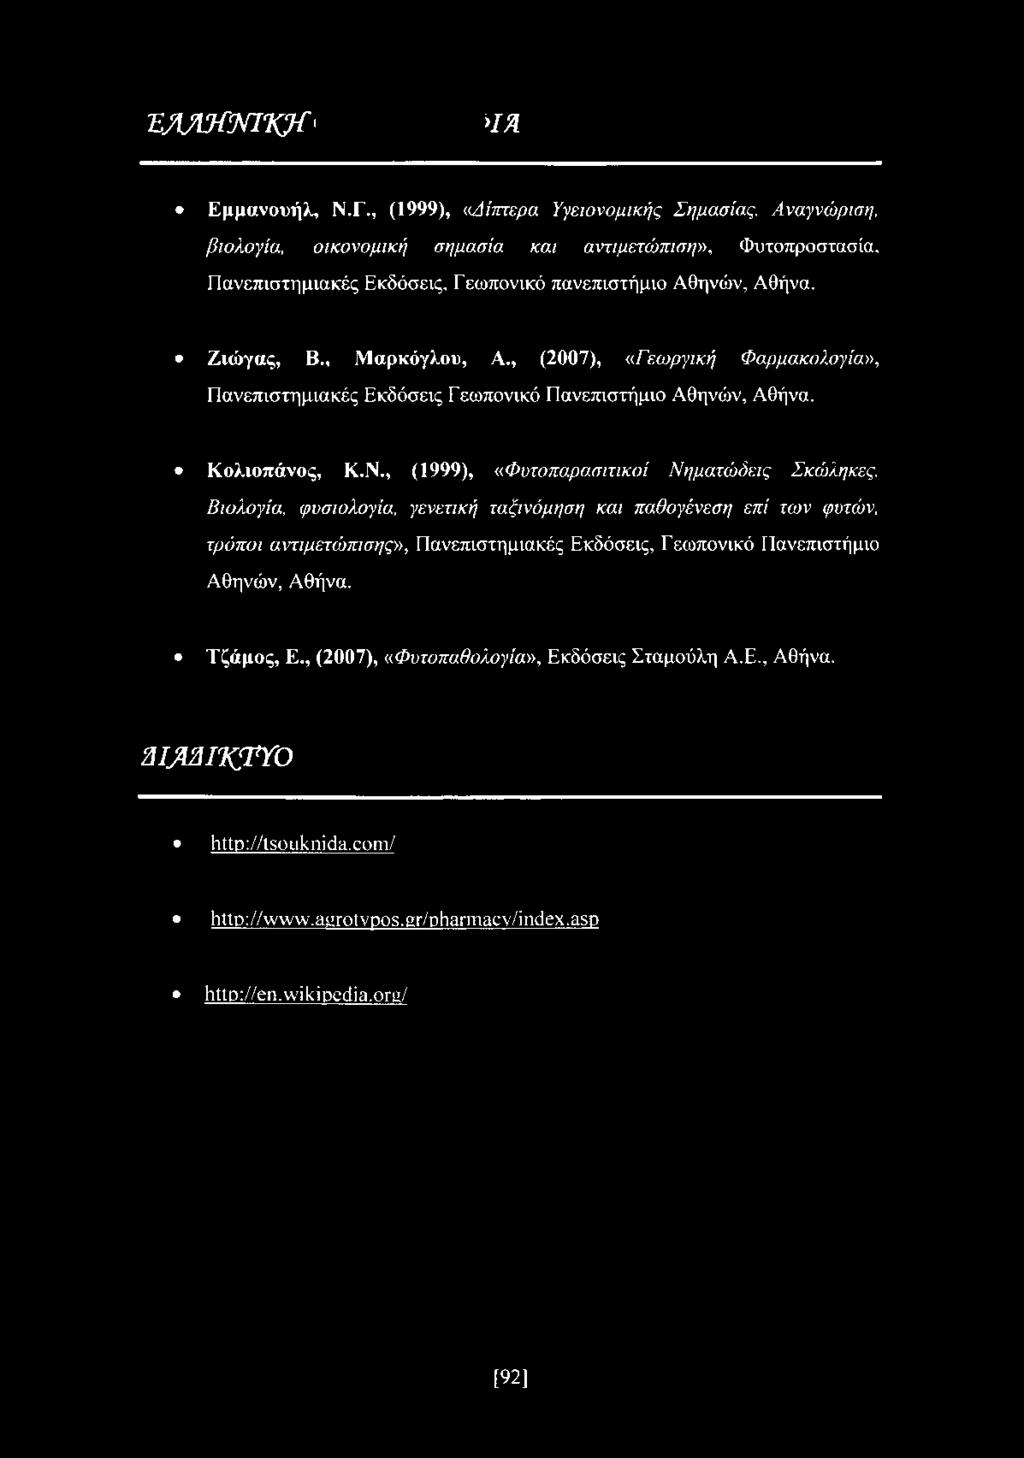 , Μαρκόγλου, Α, (2007), «Γεωργική Φαρμακολογία», Πανεπιστημιακές Εκδόσεις Γ εωπονικό Πανεπιστήμιο Αθηνών, Αθήνα. Κολιοπάνος, Κ.Ν., (1999), «Φυτοπαρασιτικοί Νηματώδεις Σκώληκες.